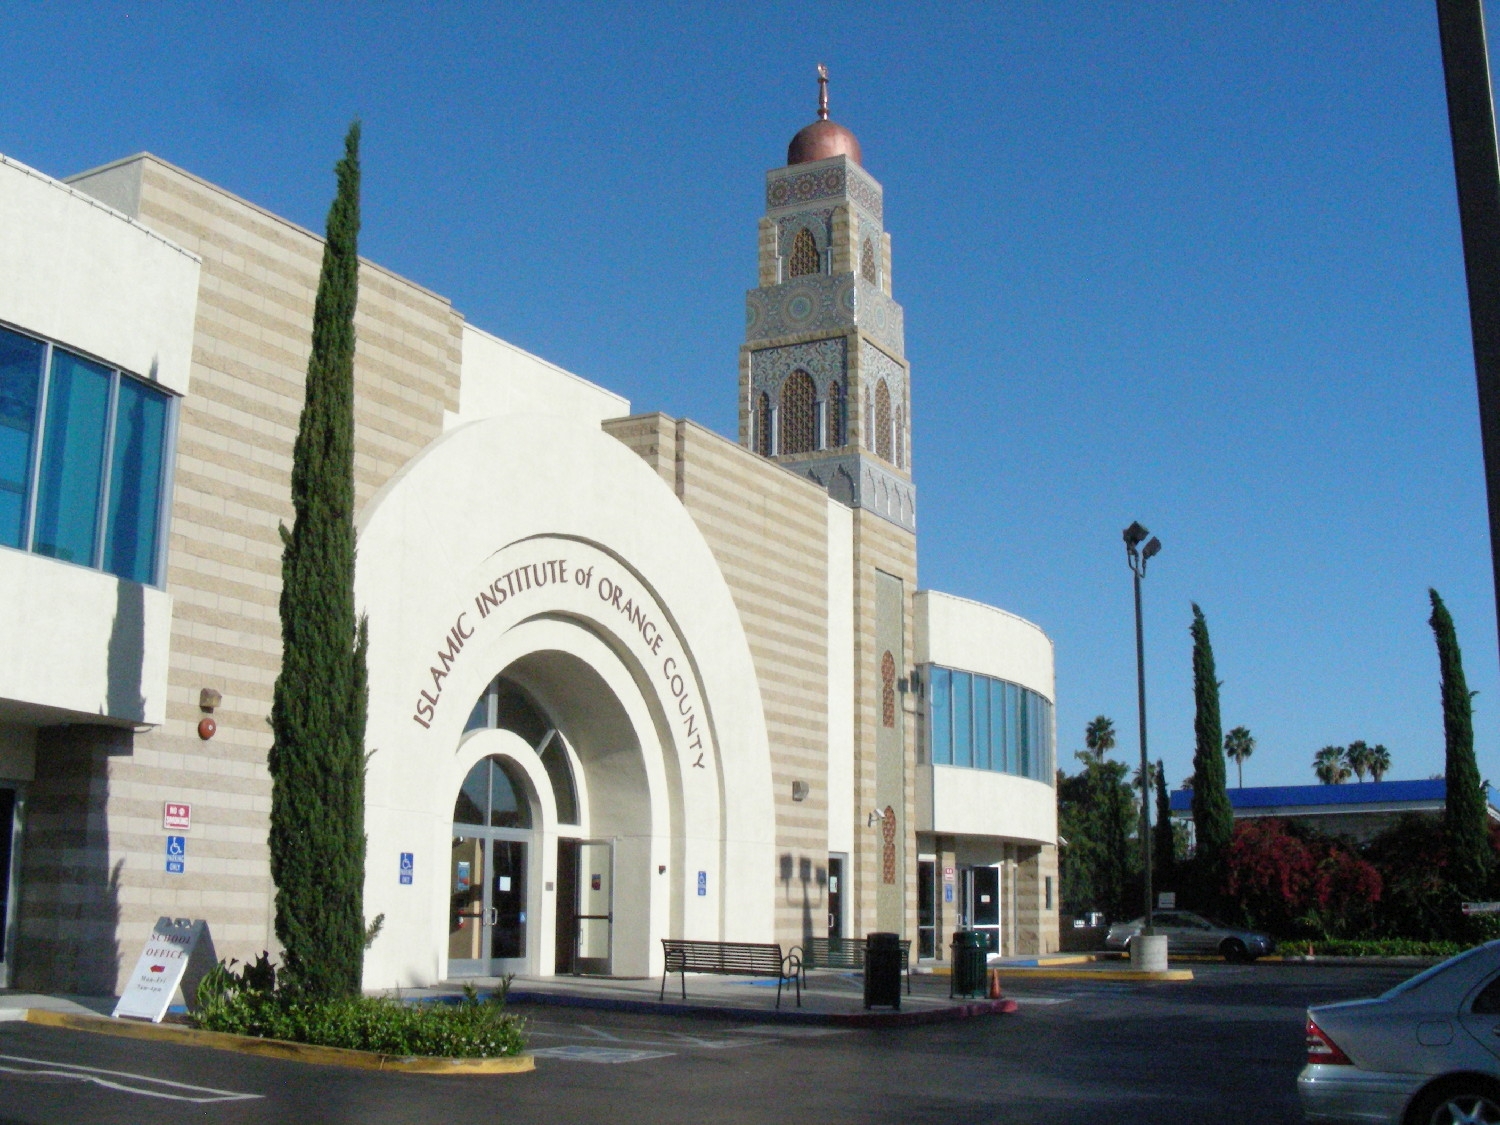 Exterior view, entrance facade with minaret